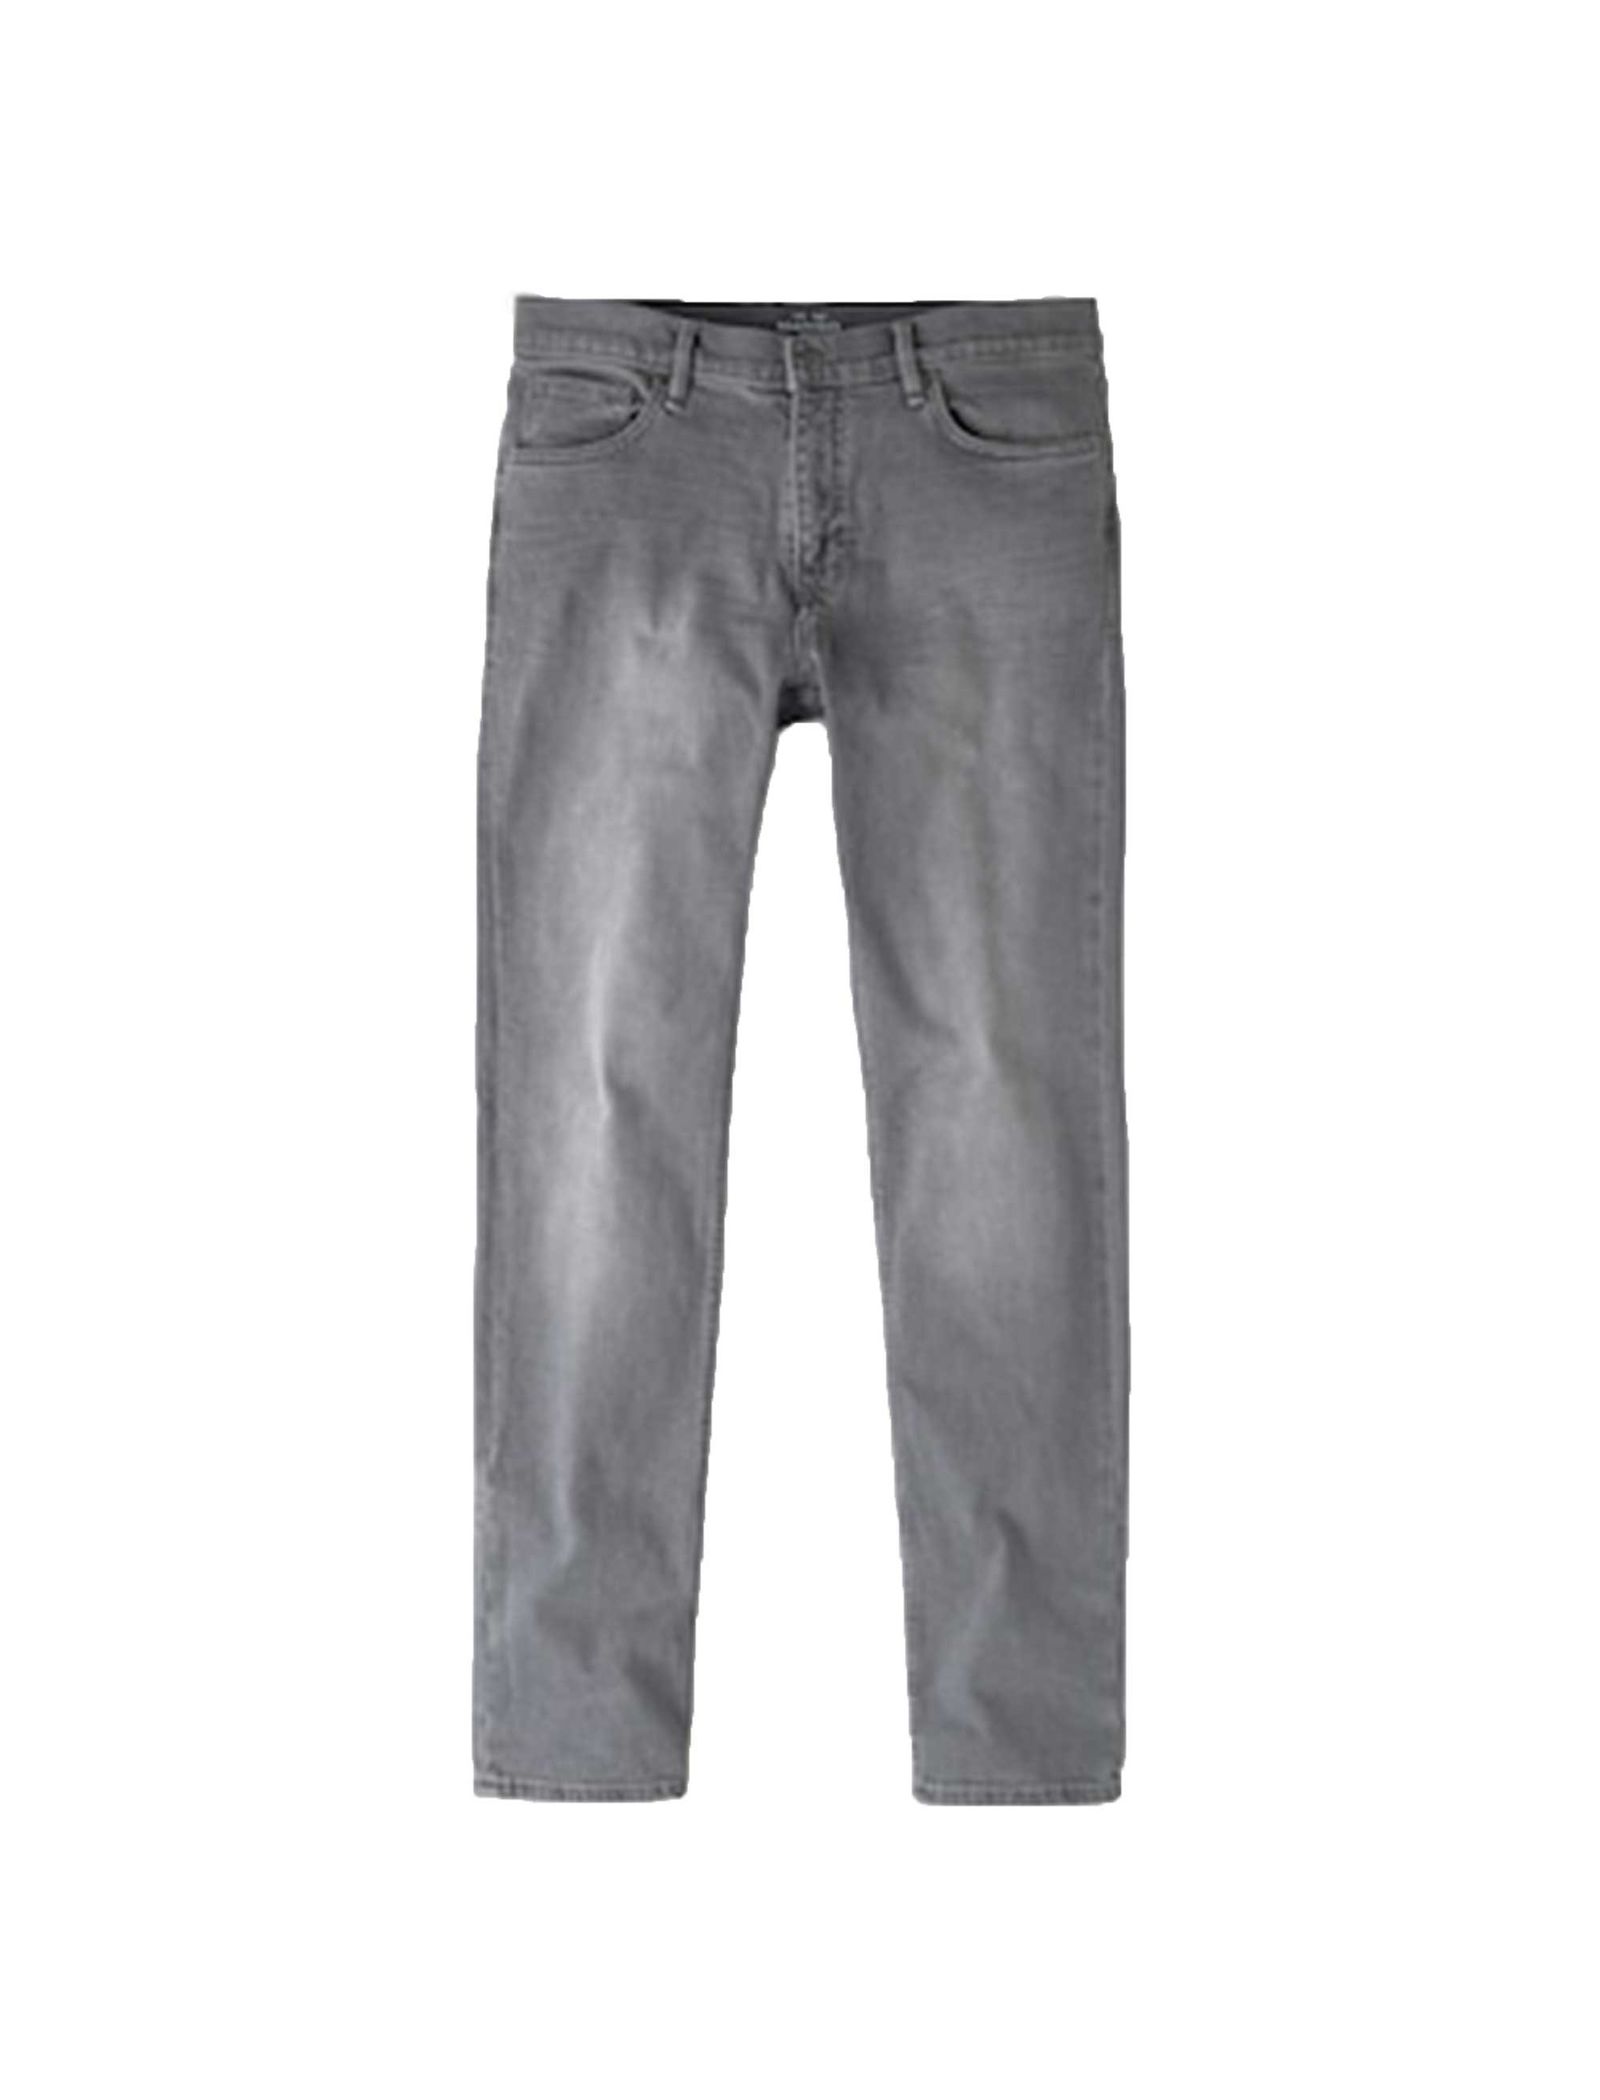 شلوار جین راسته مردانه - مانگو - طوسي - 1